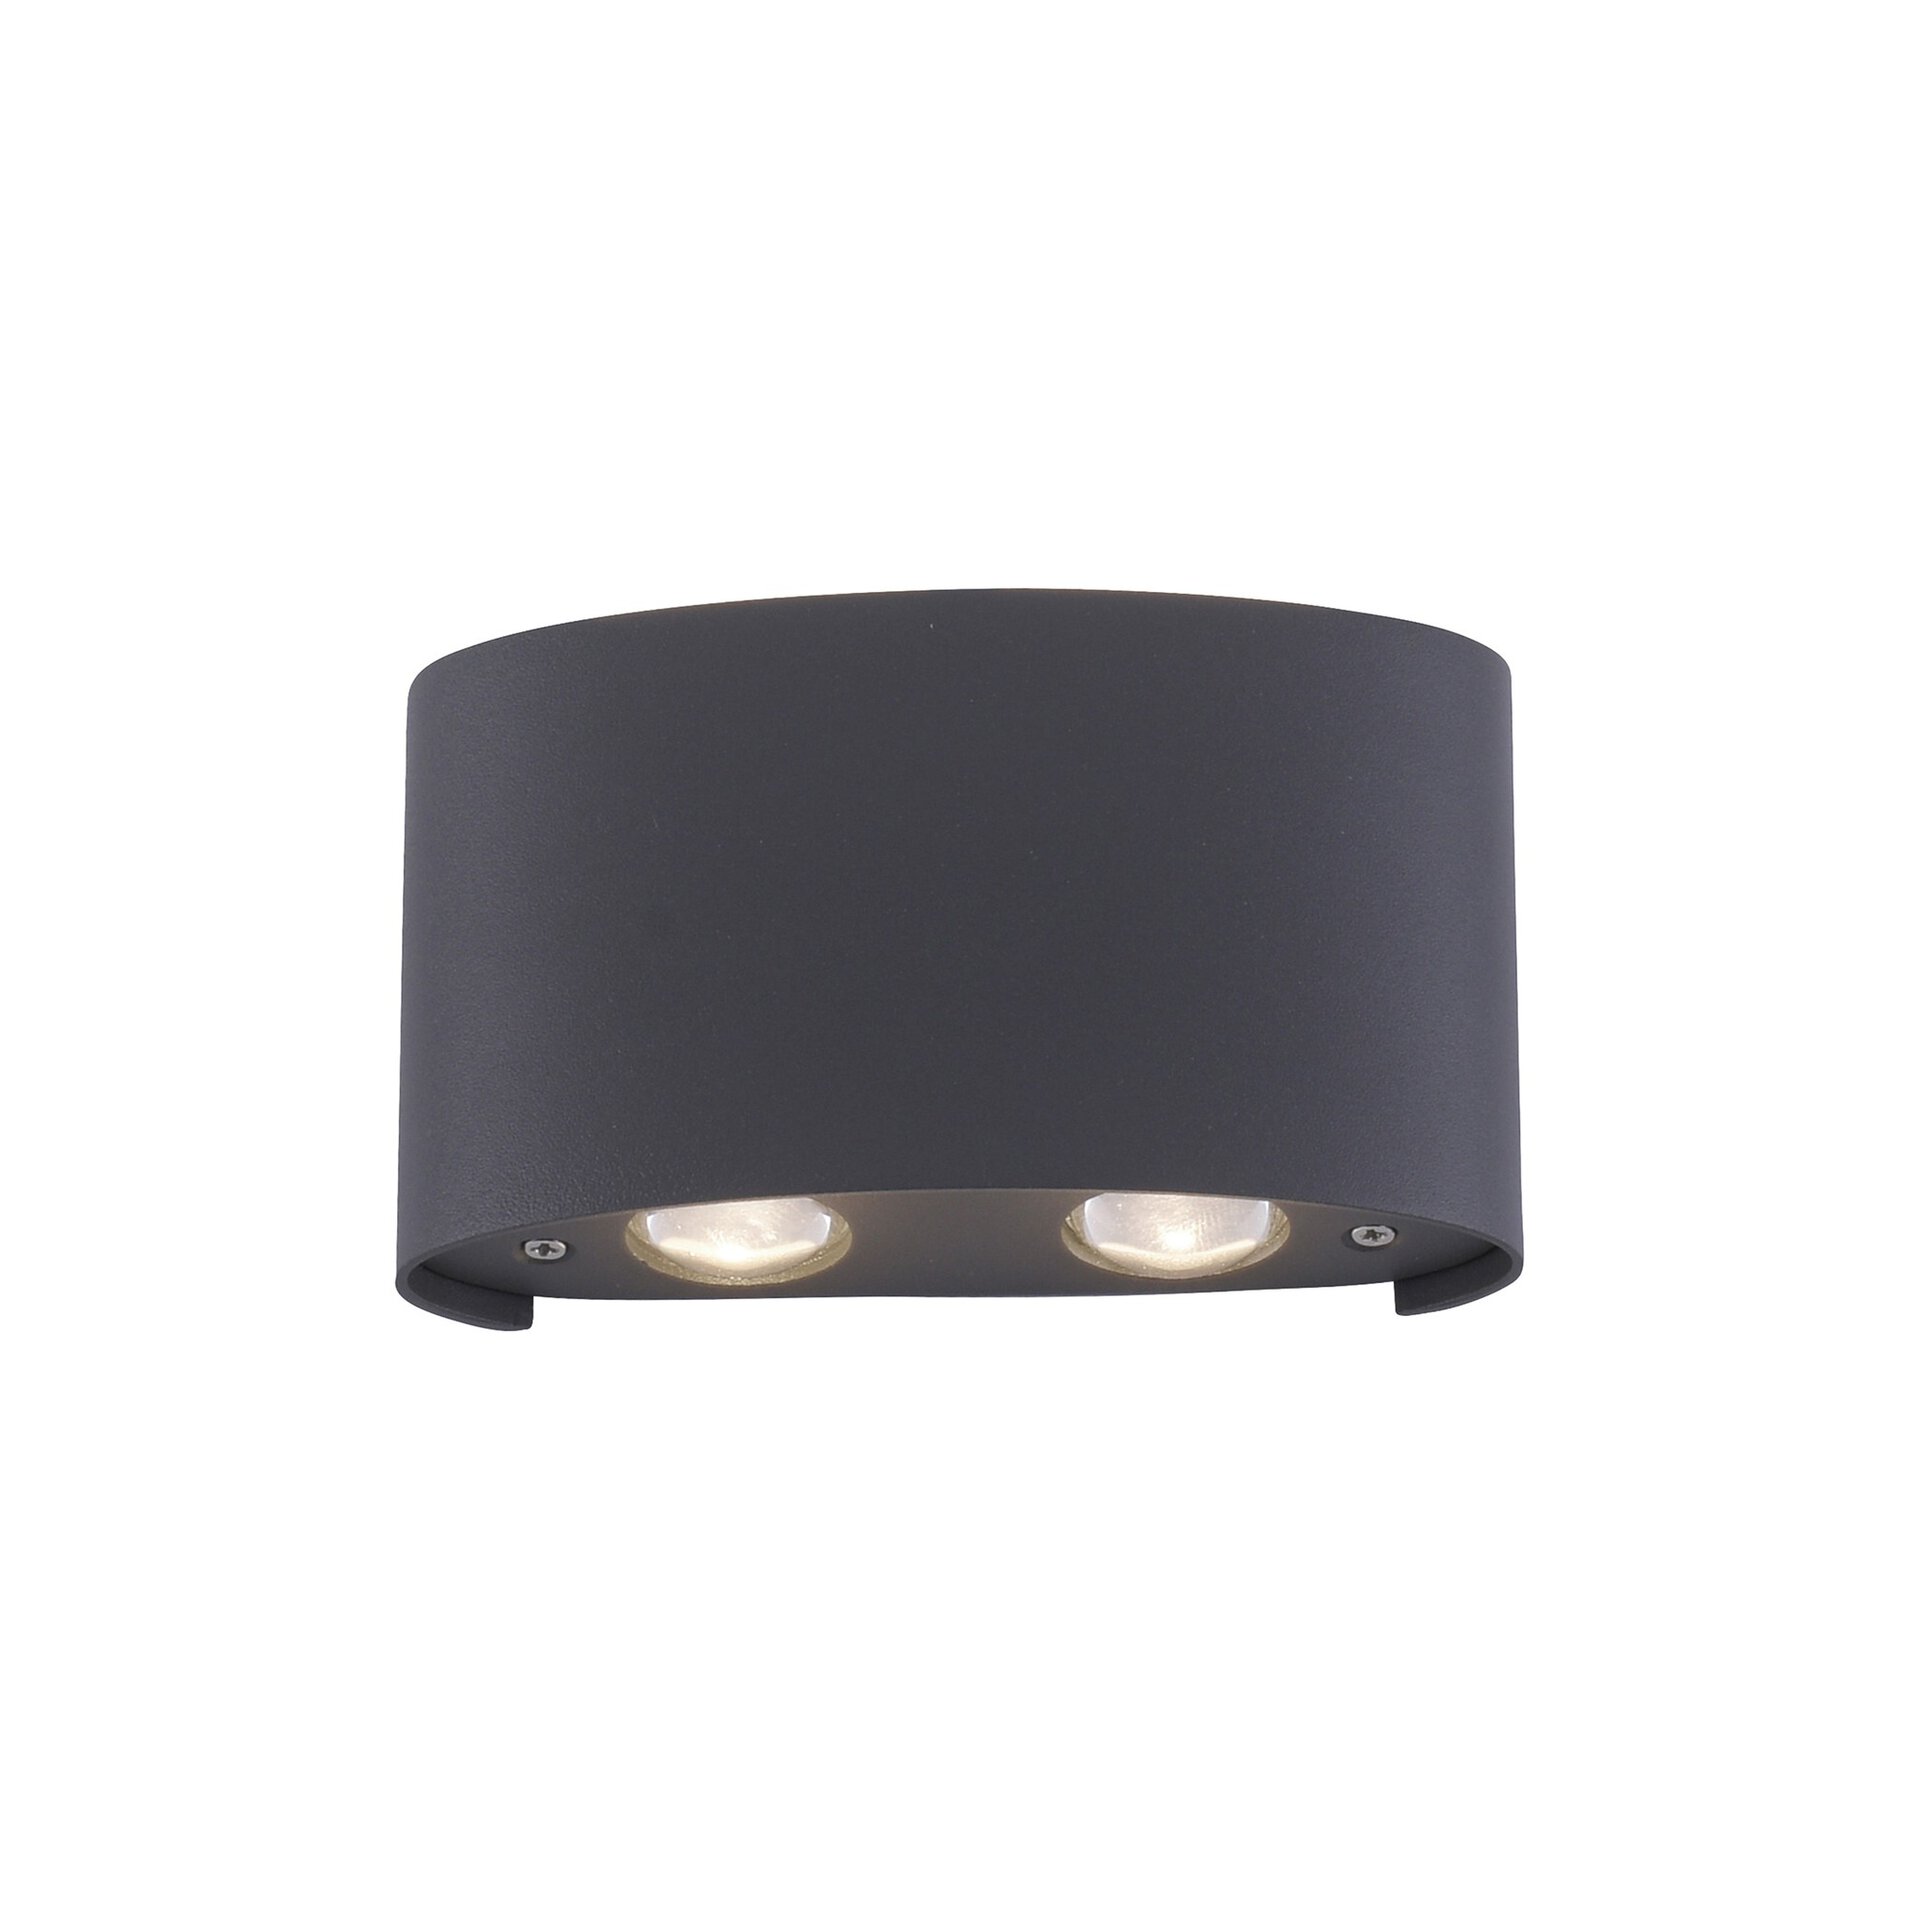 LED Möbel schwarz | Wand-Aussenleuchte Inhofer